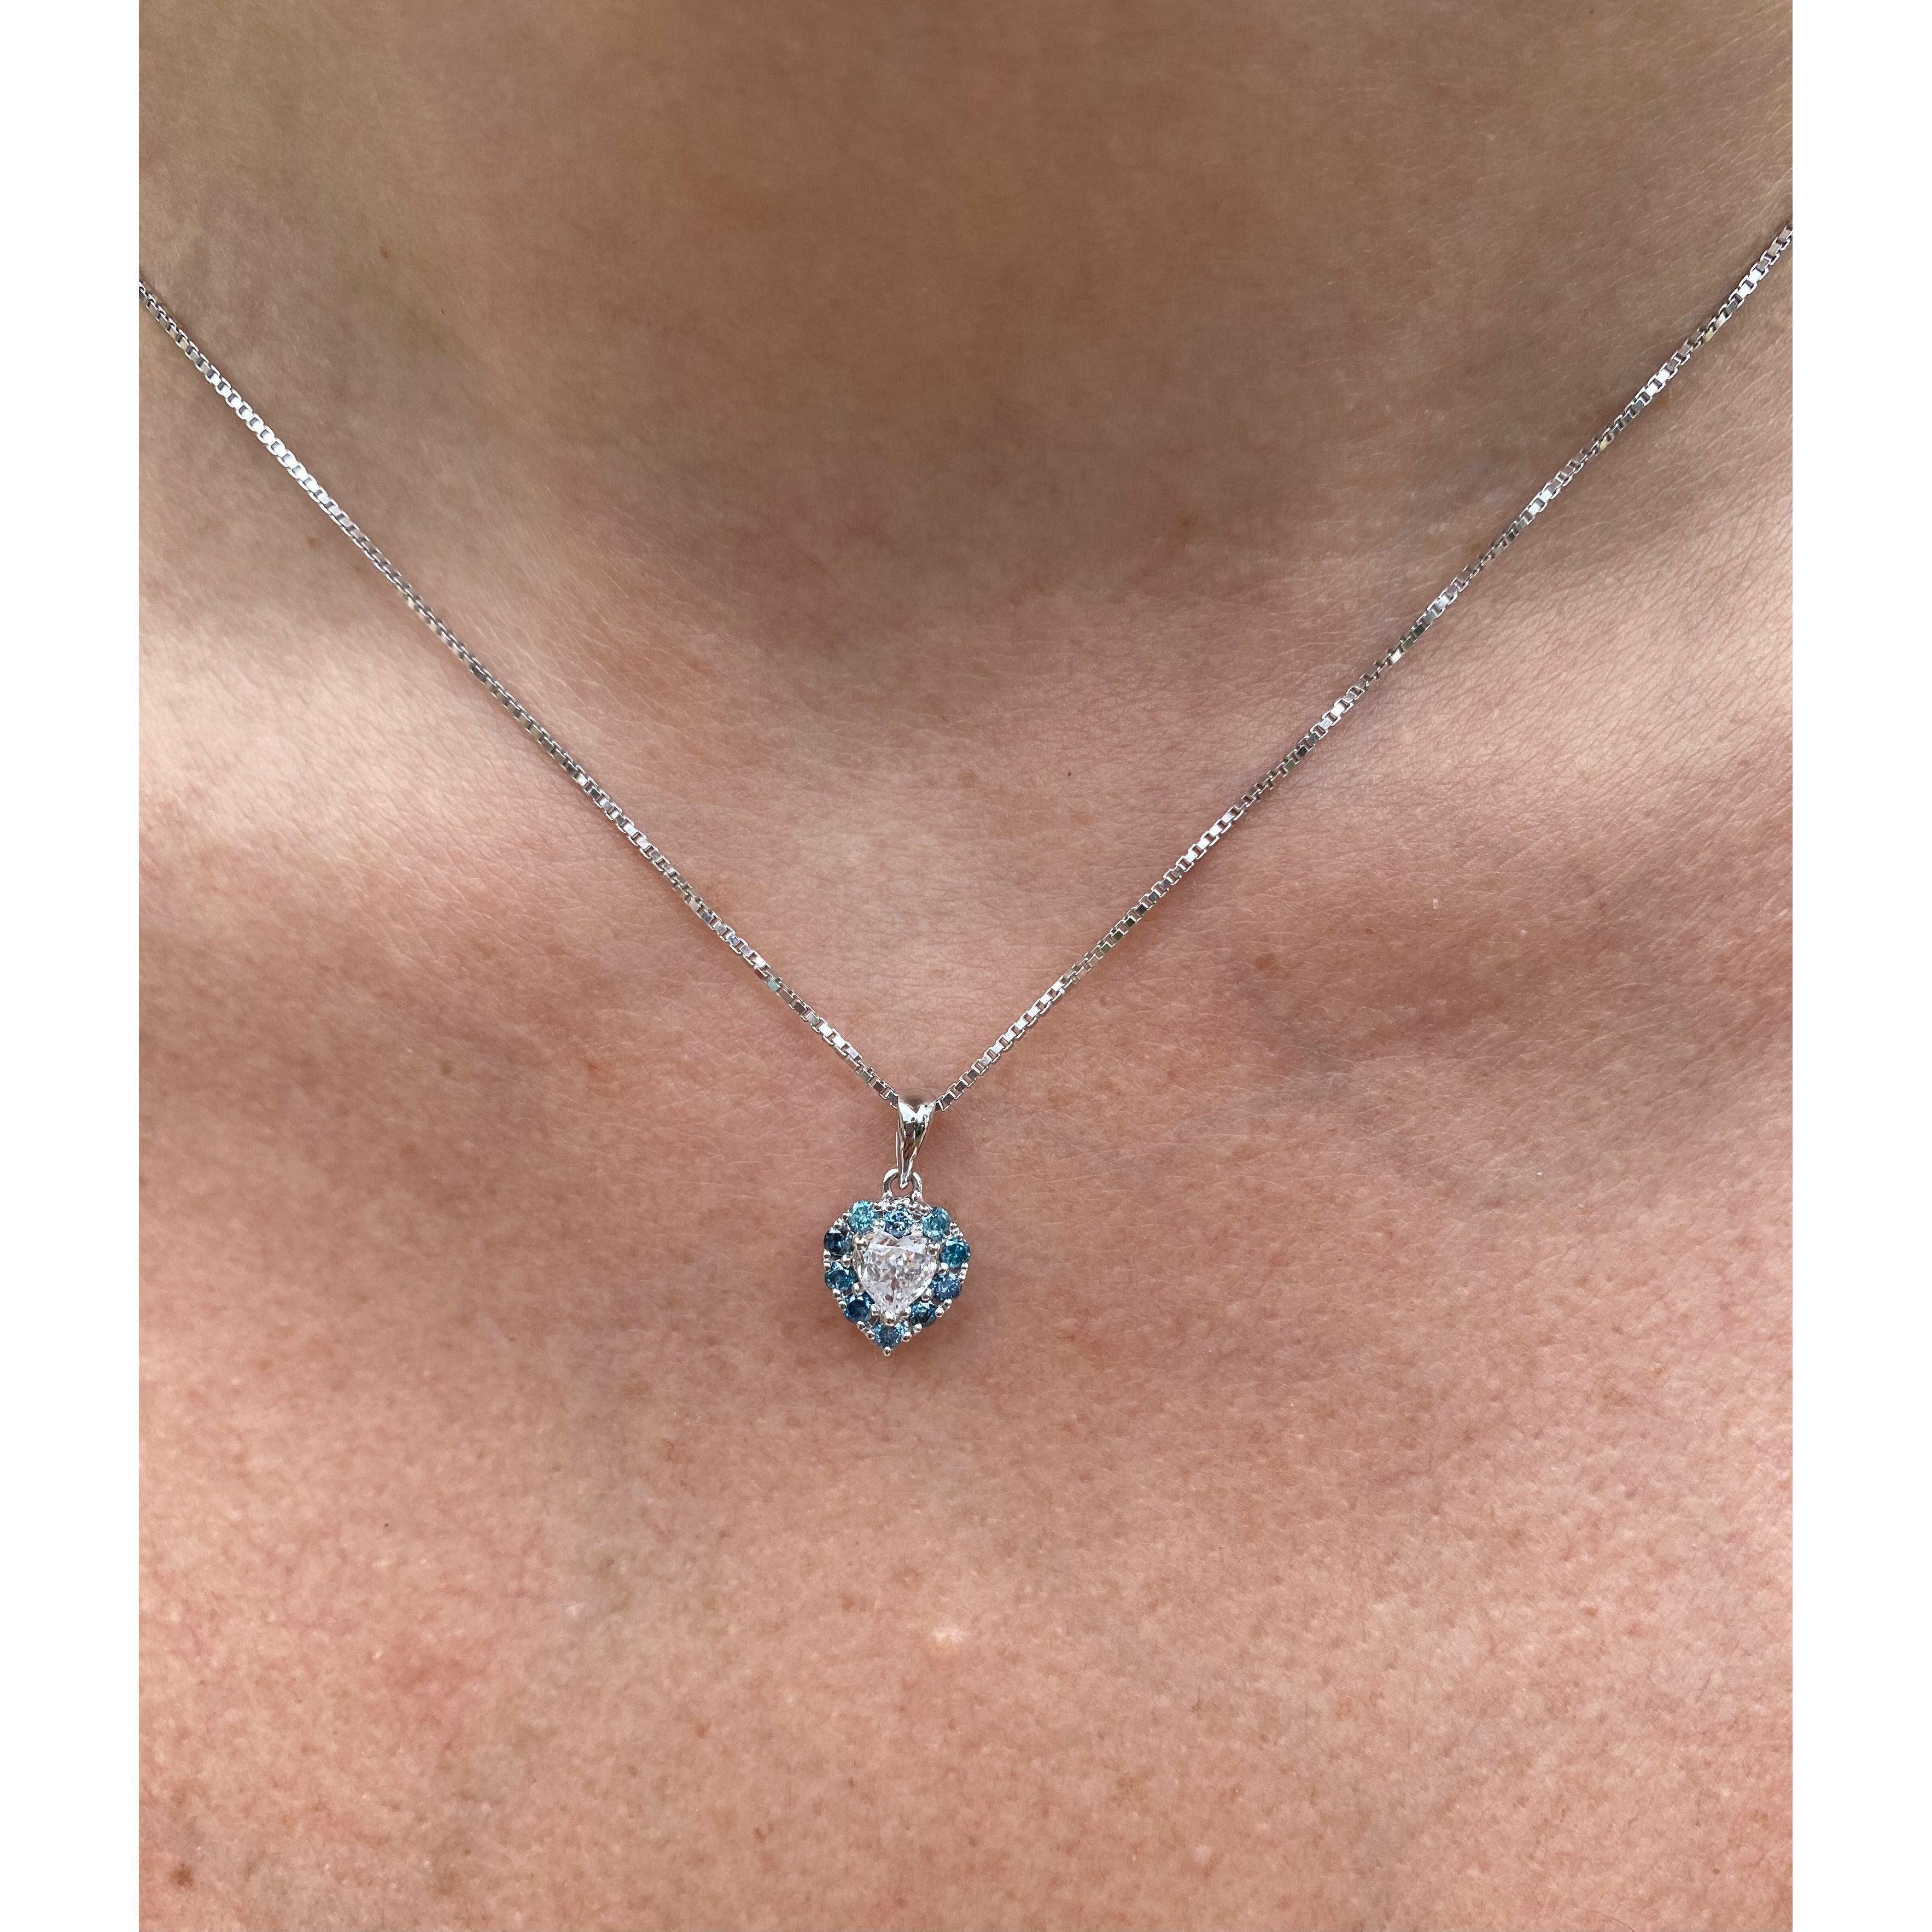 Fancy Blue and White Diamond Heart Shape Pendant in 14k white gold - ASSAY